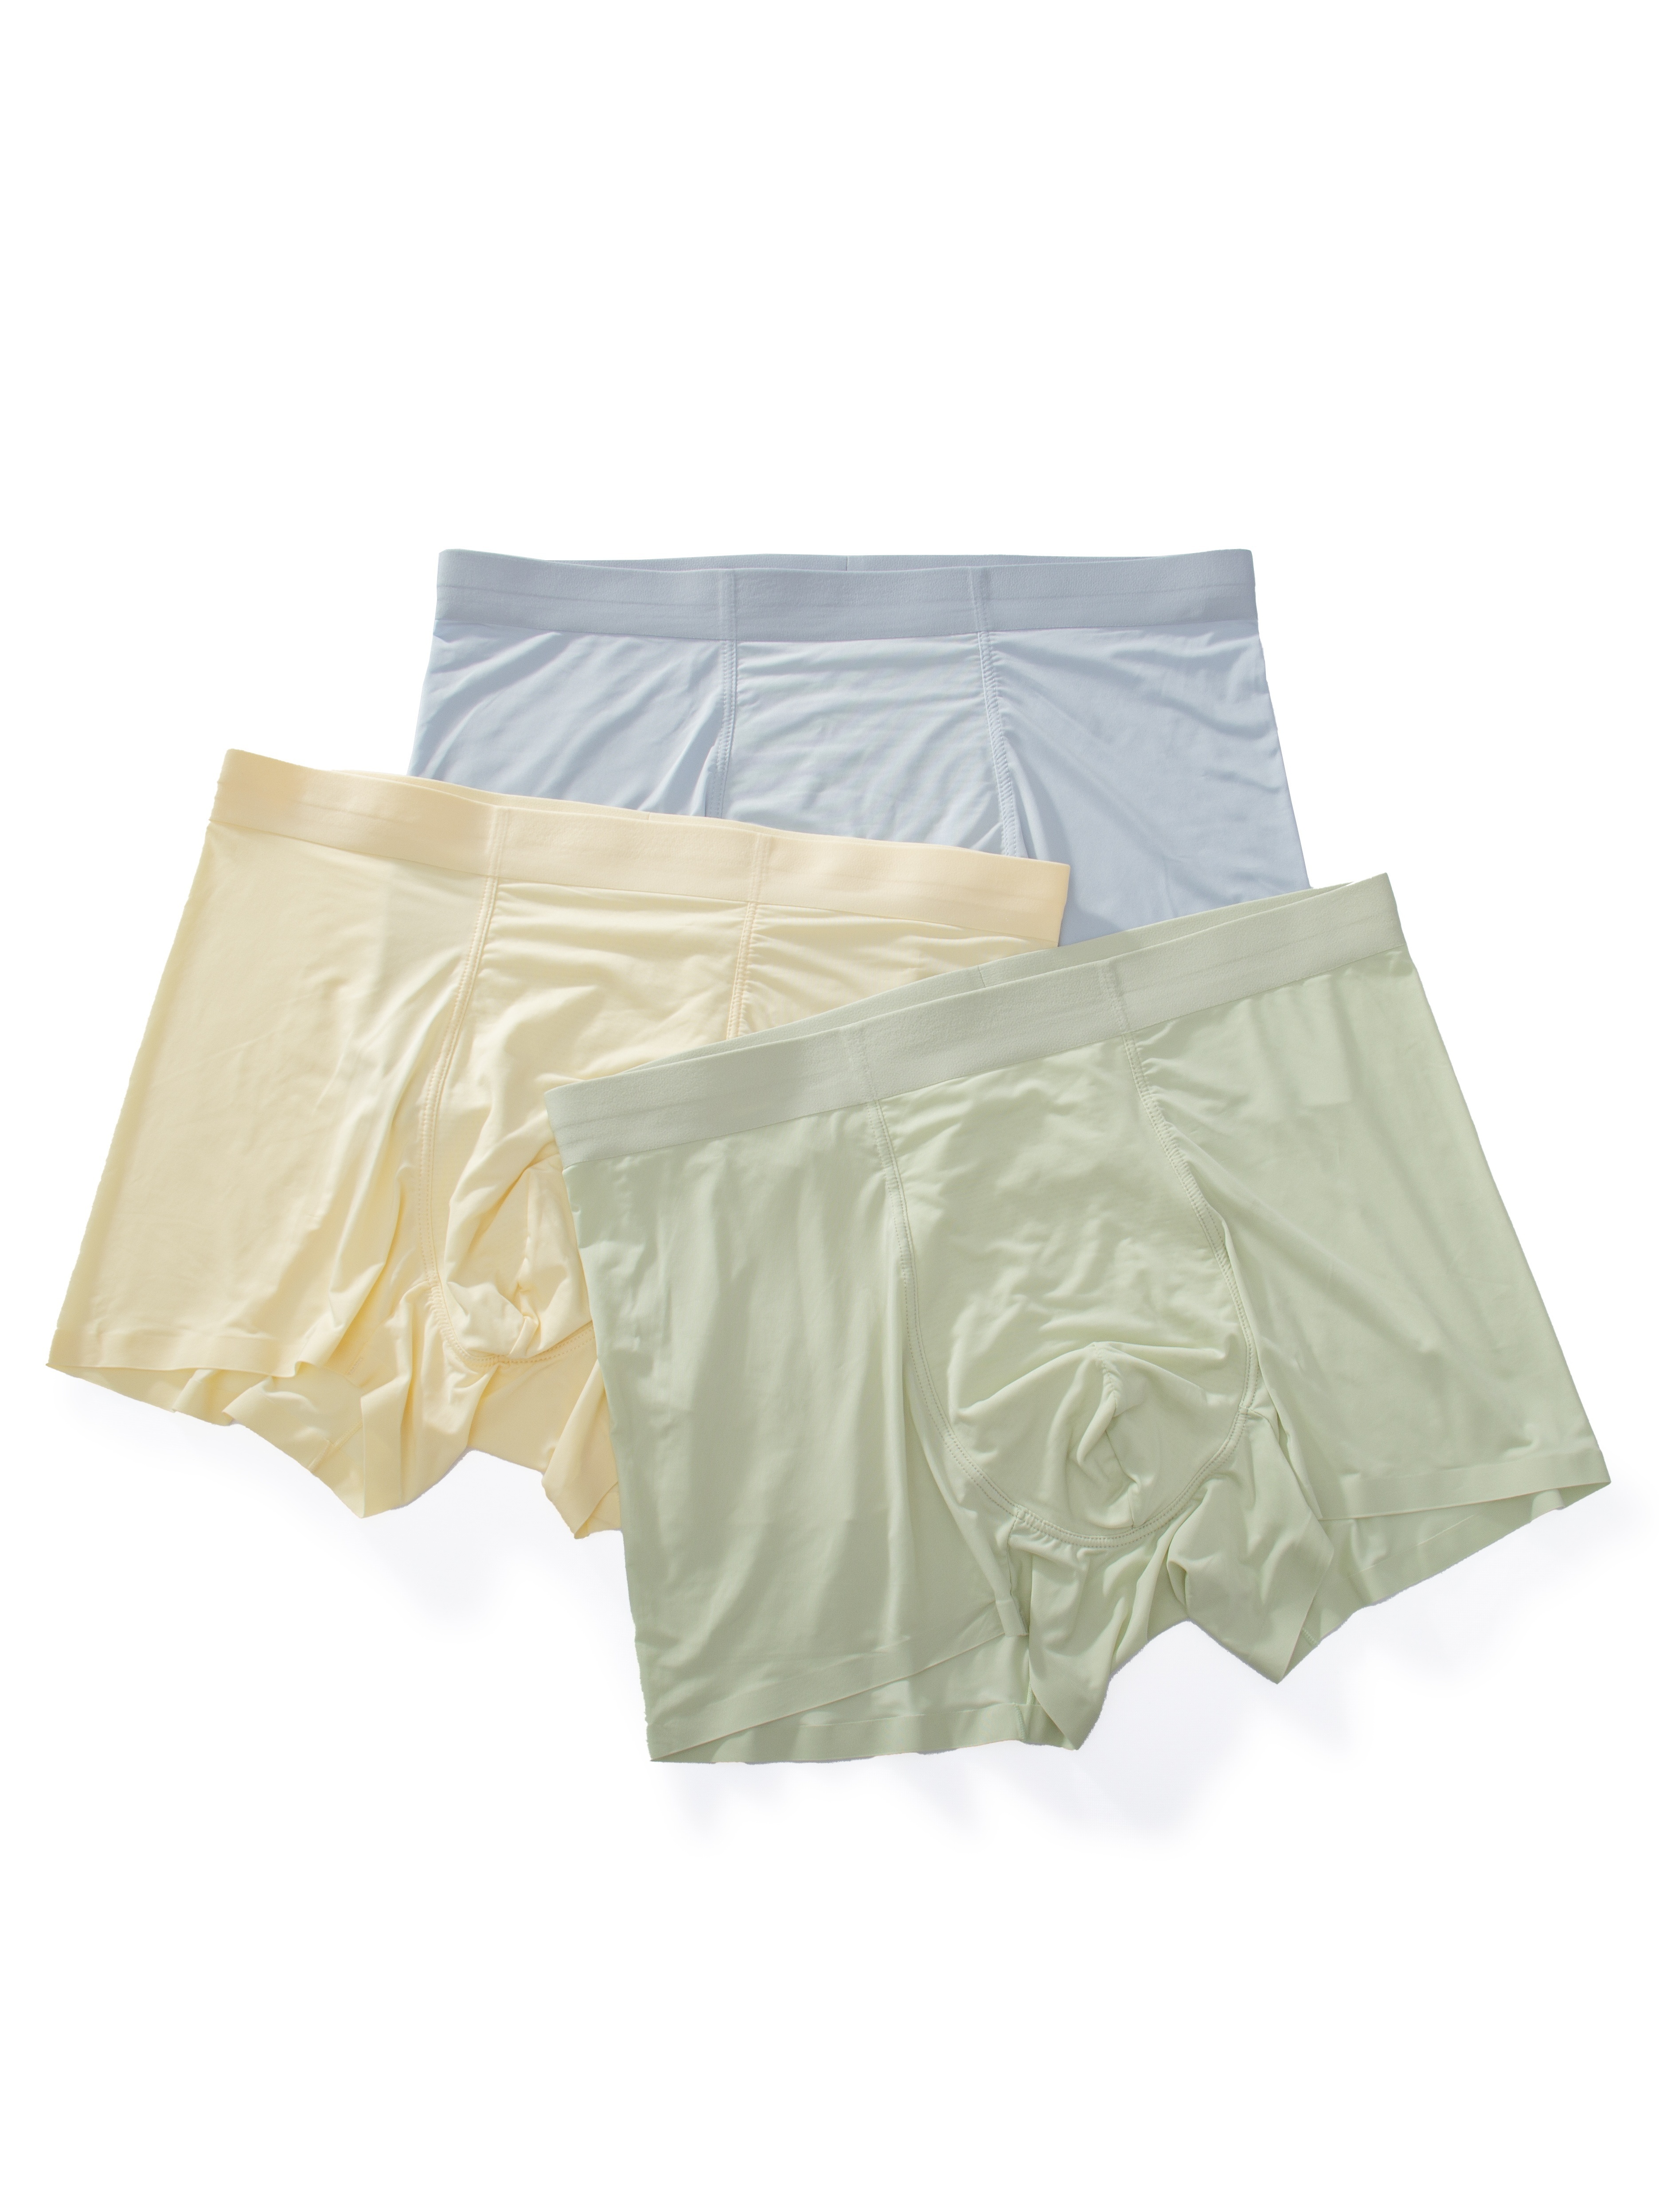 Men's Original Single Ice Silk Underwear 886 - China Underwear and